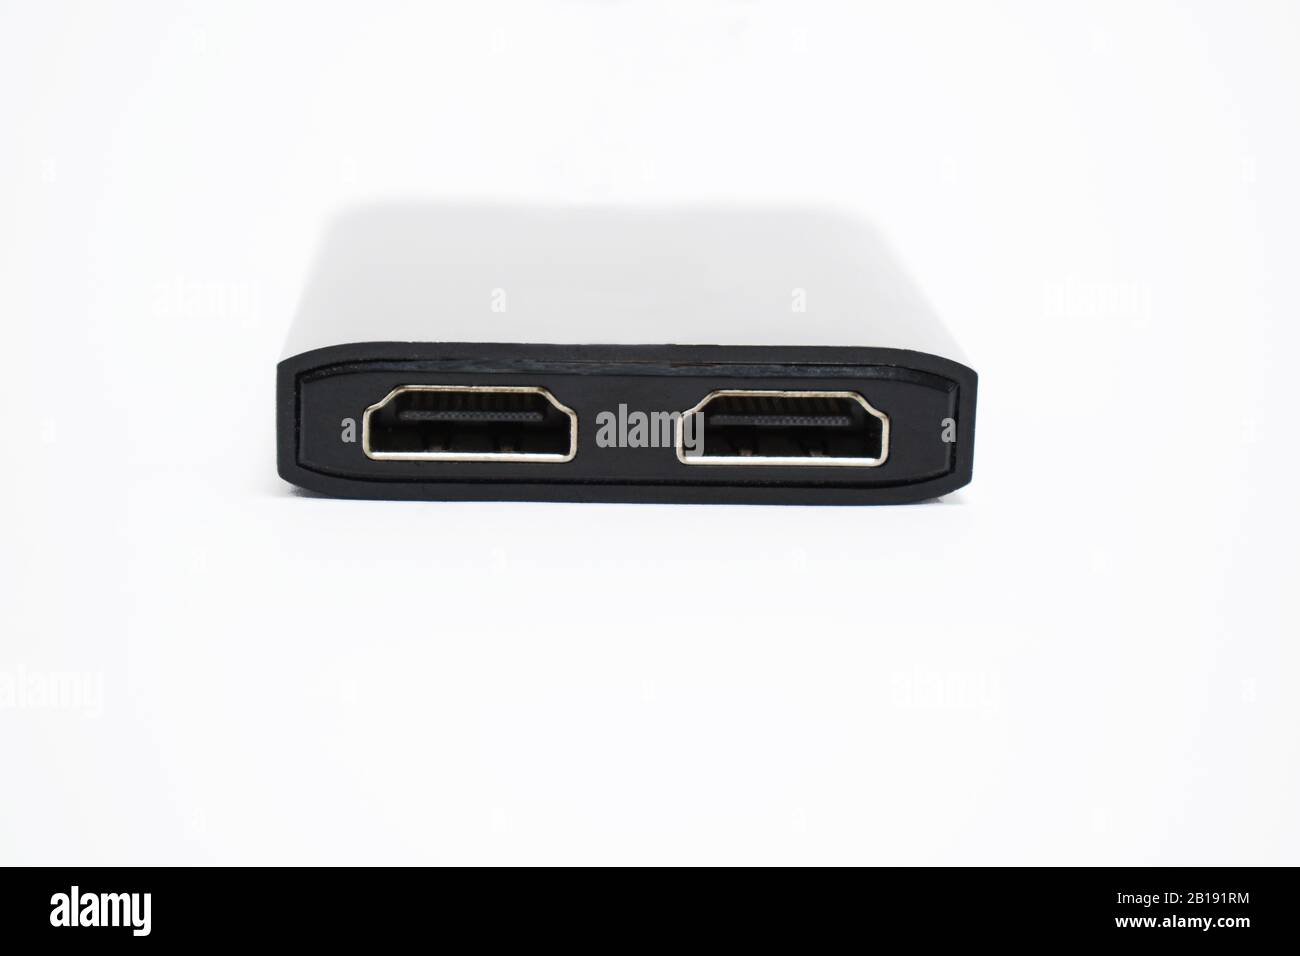 Seitenansicht eines schwarzen HDMI-Kabels, das zwei ähnliche Anschlüsse zum Anschließen des Kabels hat und über einen weißen Hintergrund platziert wird Stockfoto